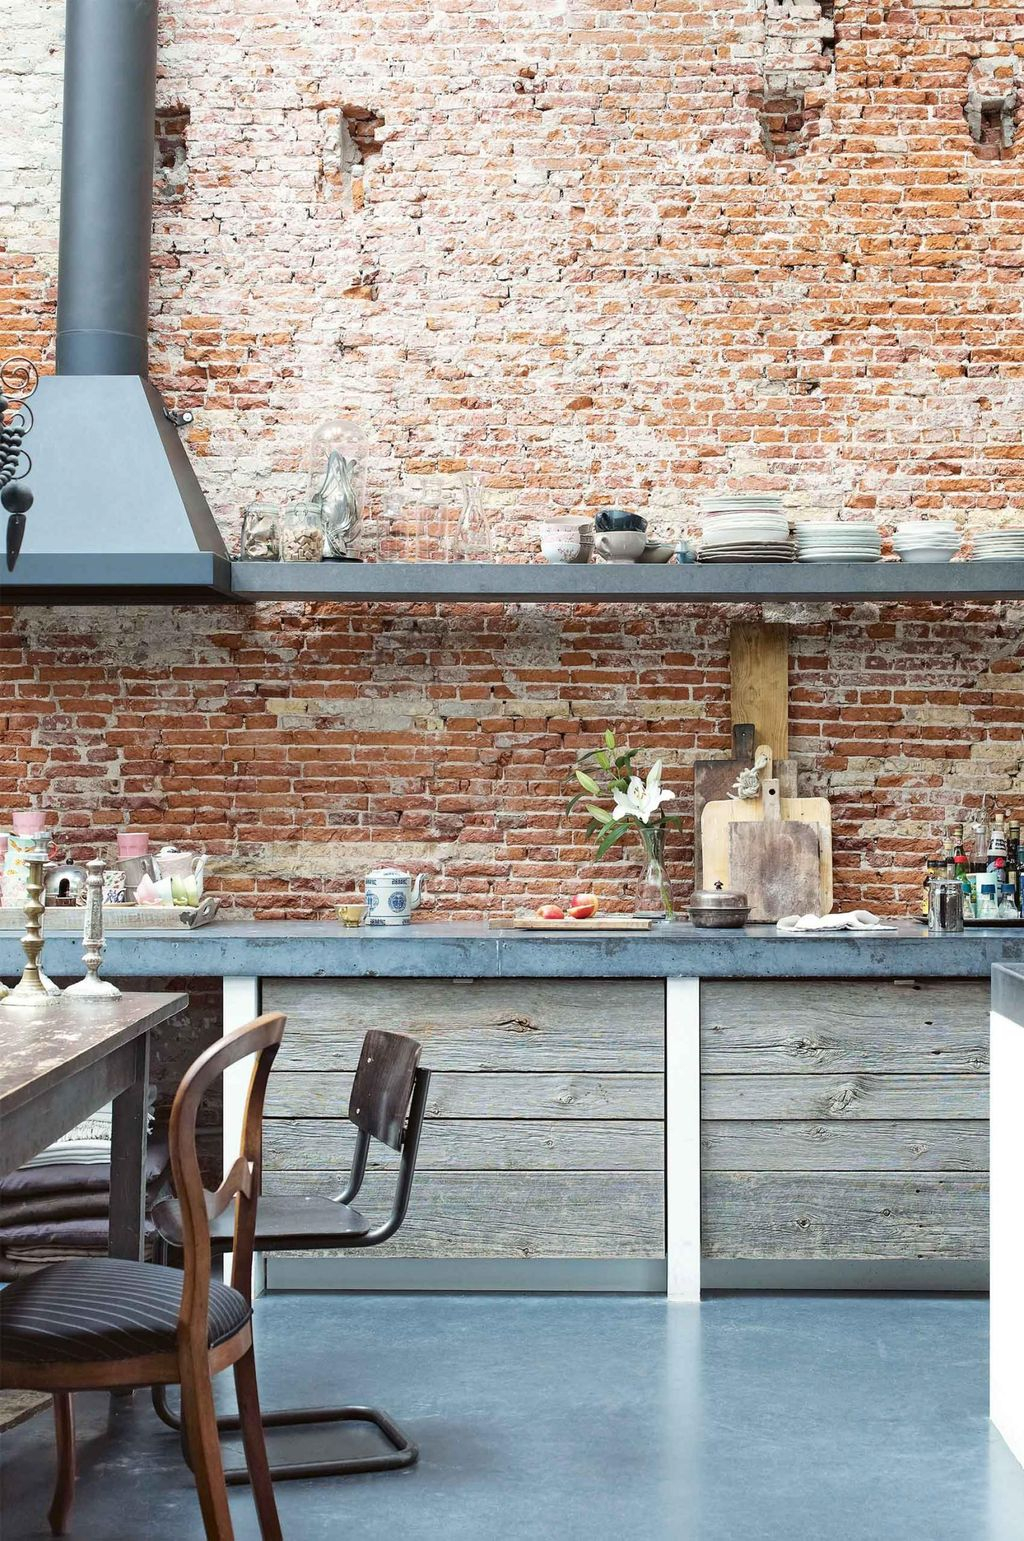 Wonderful Industrial Kitchen Shelf Design Ideas To Organize Your Kitchen05